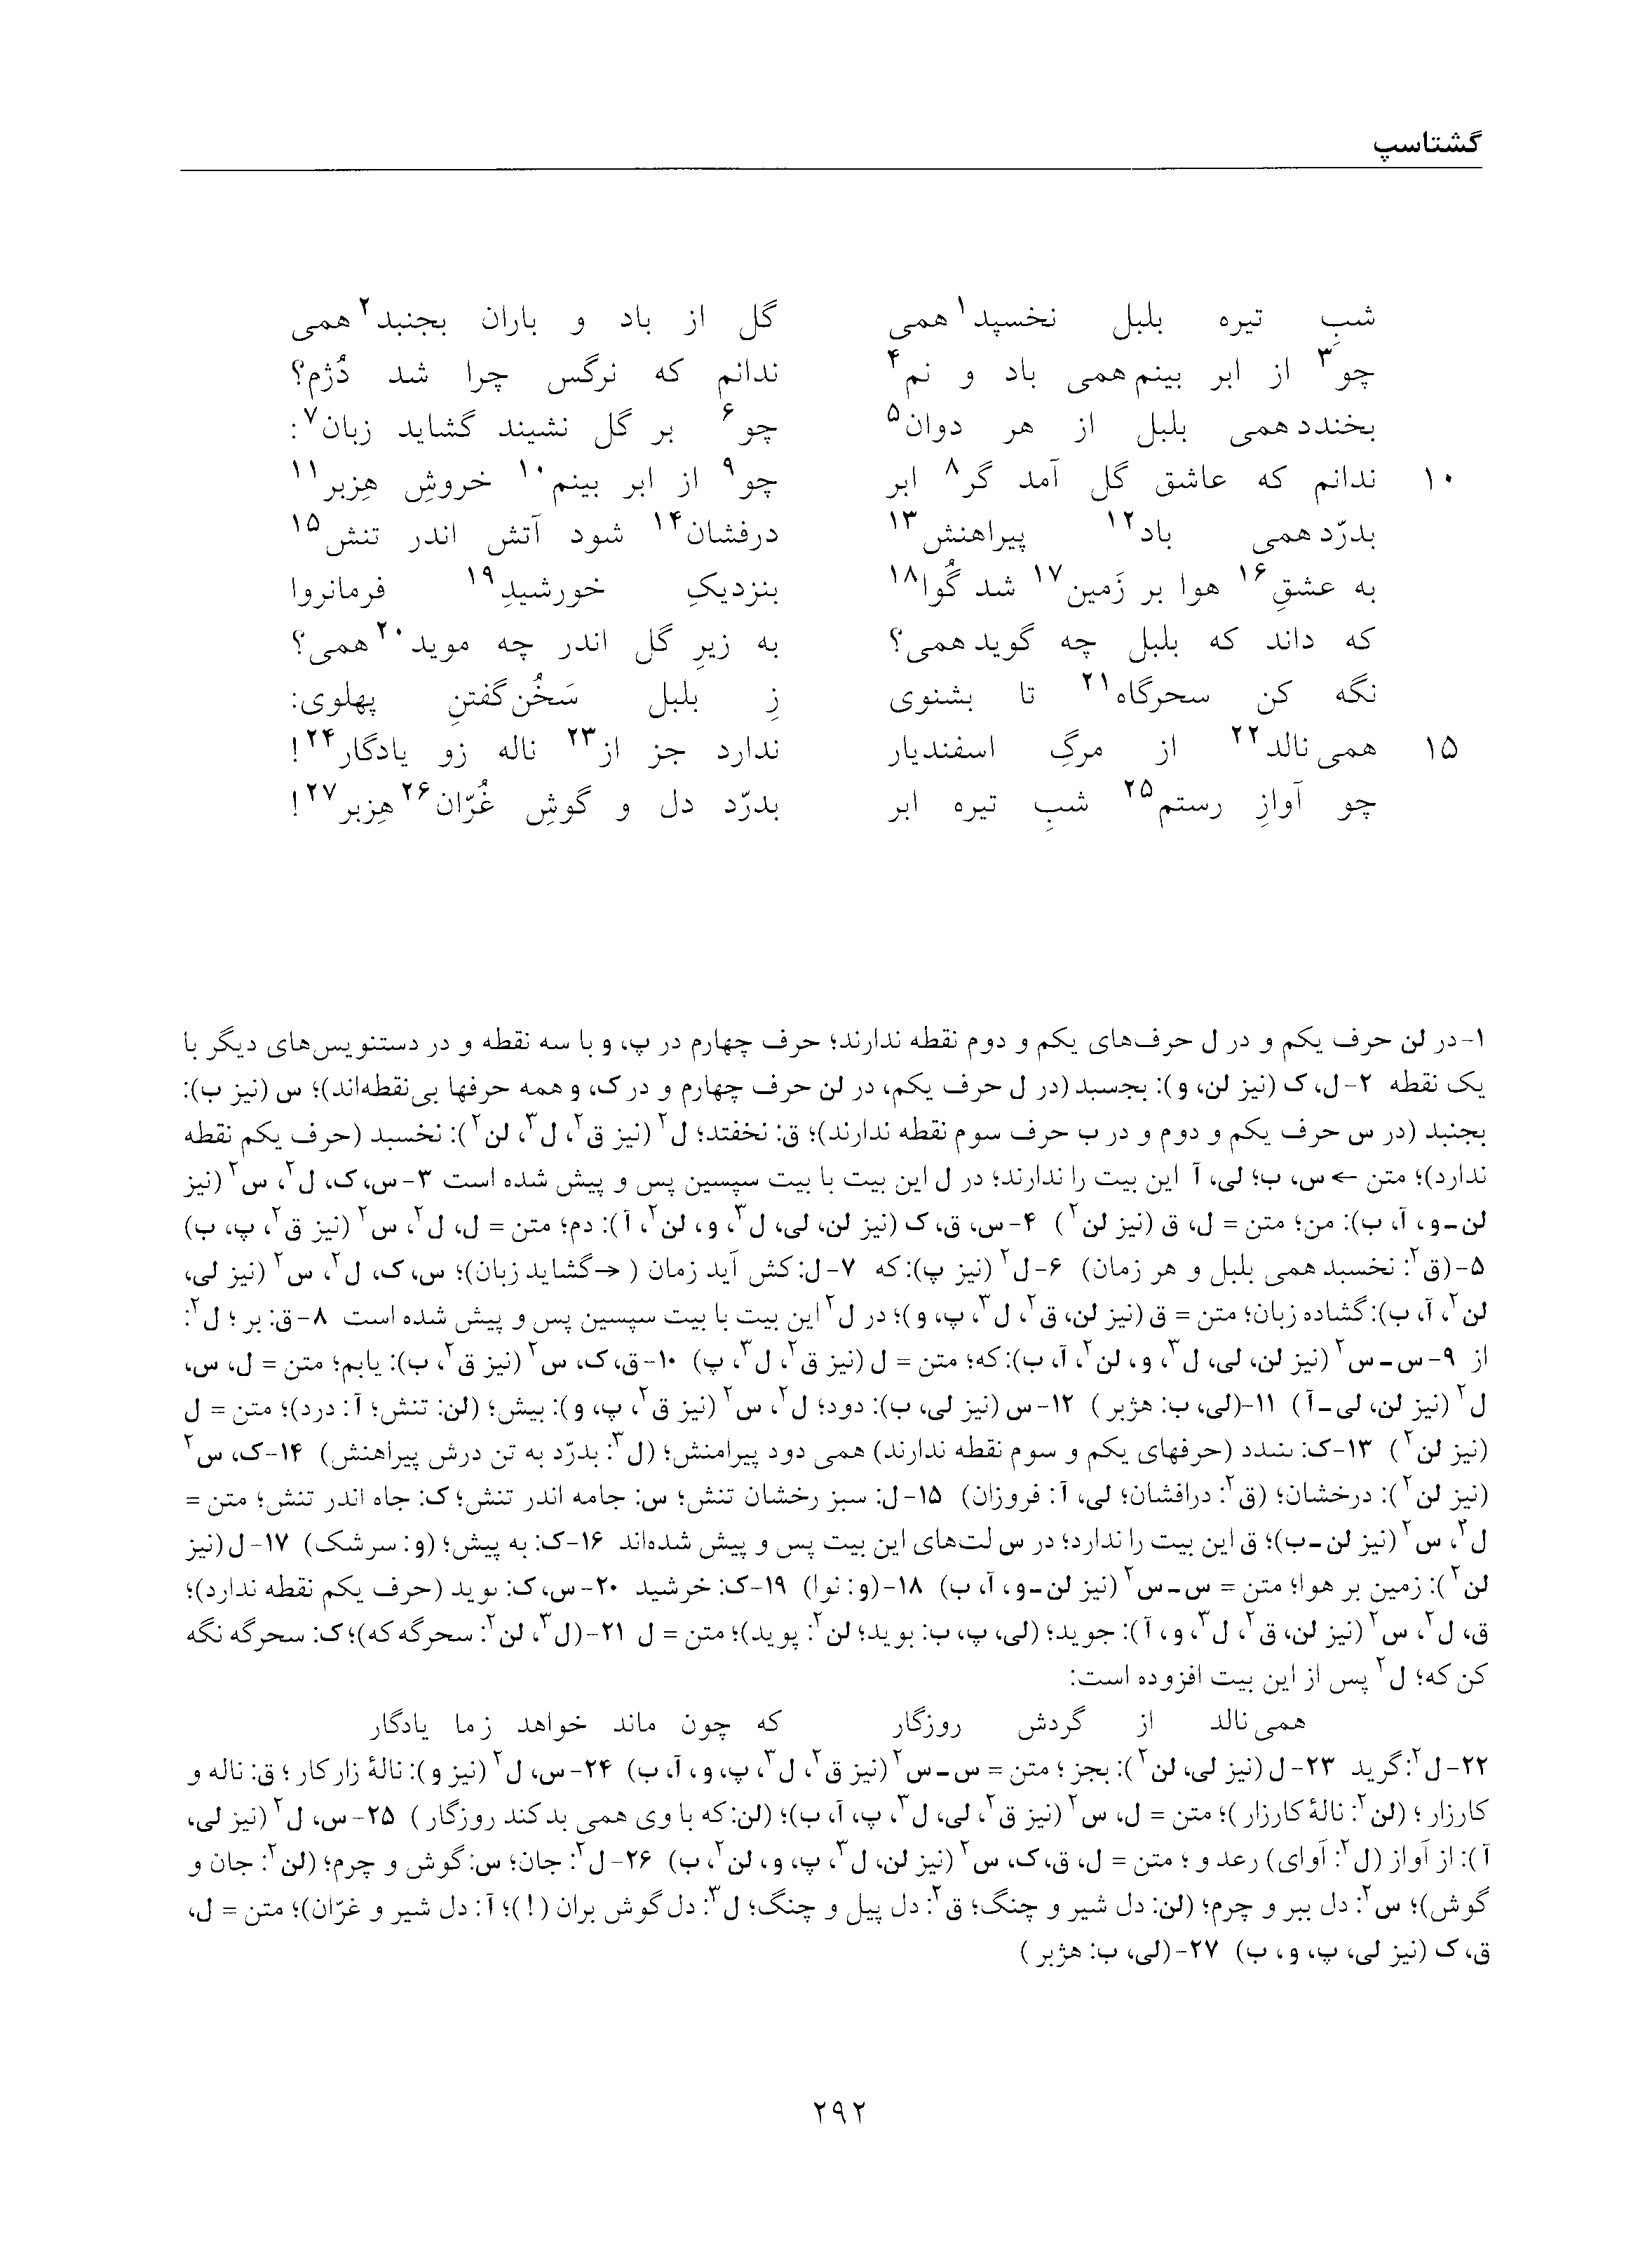 vol. 5, p. 292